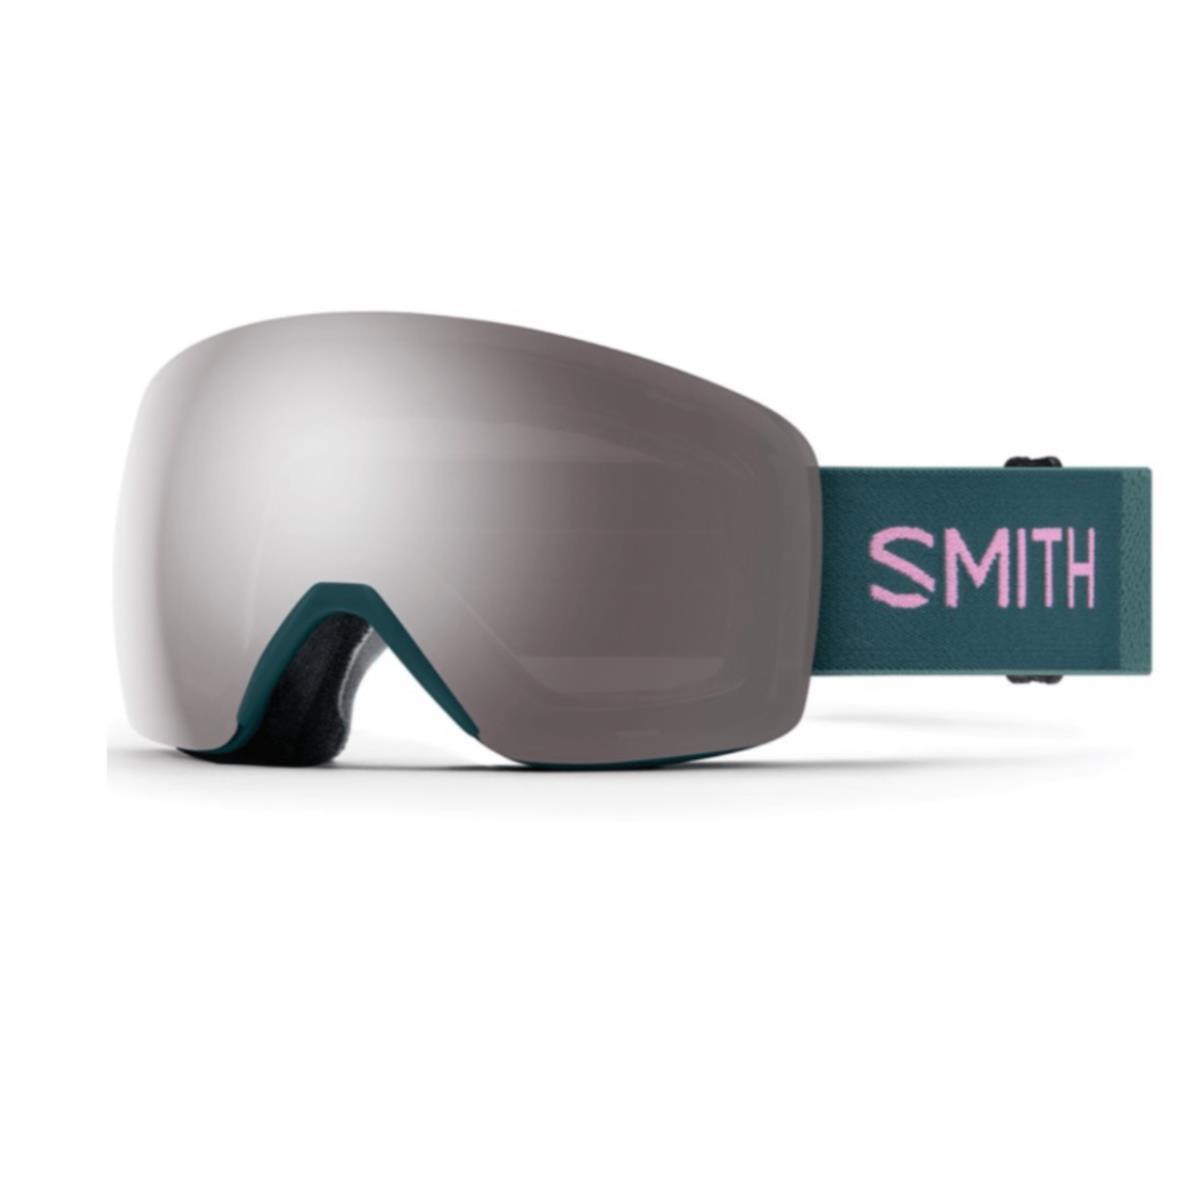 Smith Optics 4D Mag Snow Goggles - Everglade/sun Platinum Mirror